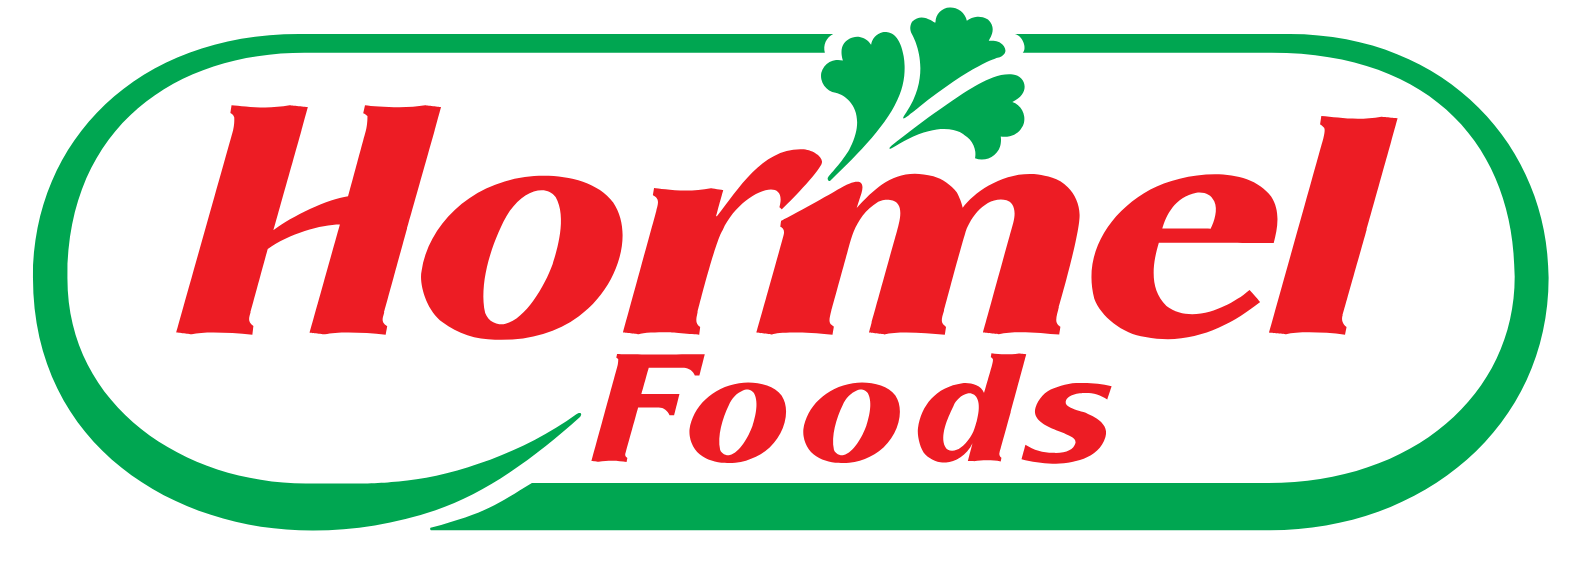 Hormel Foods logo (PNG transparent)